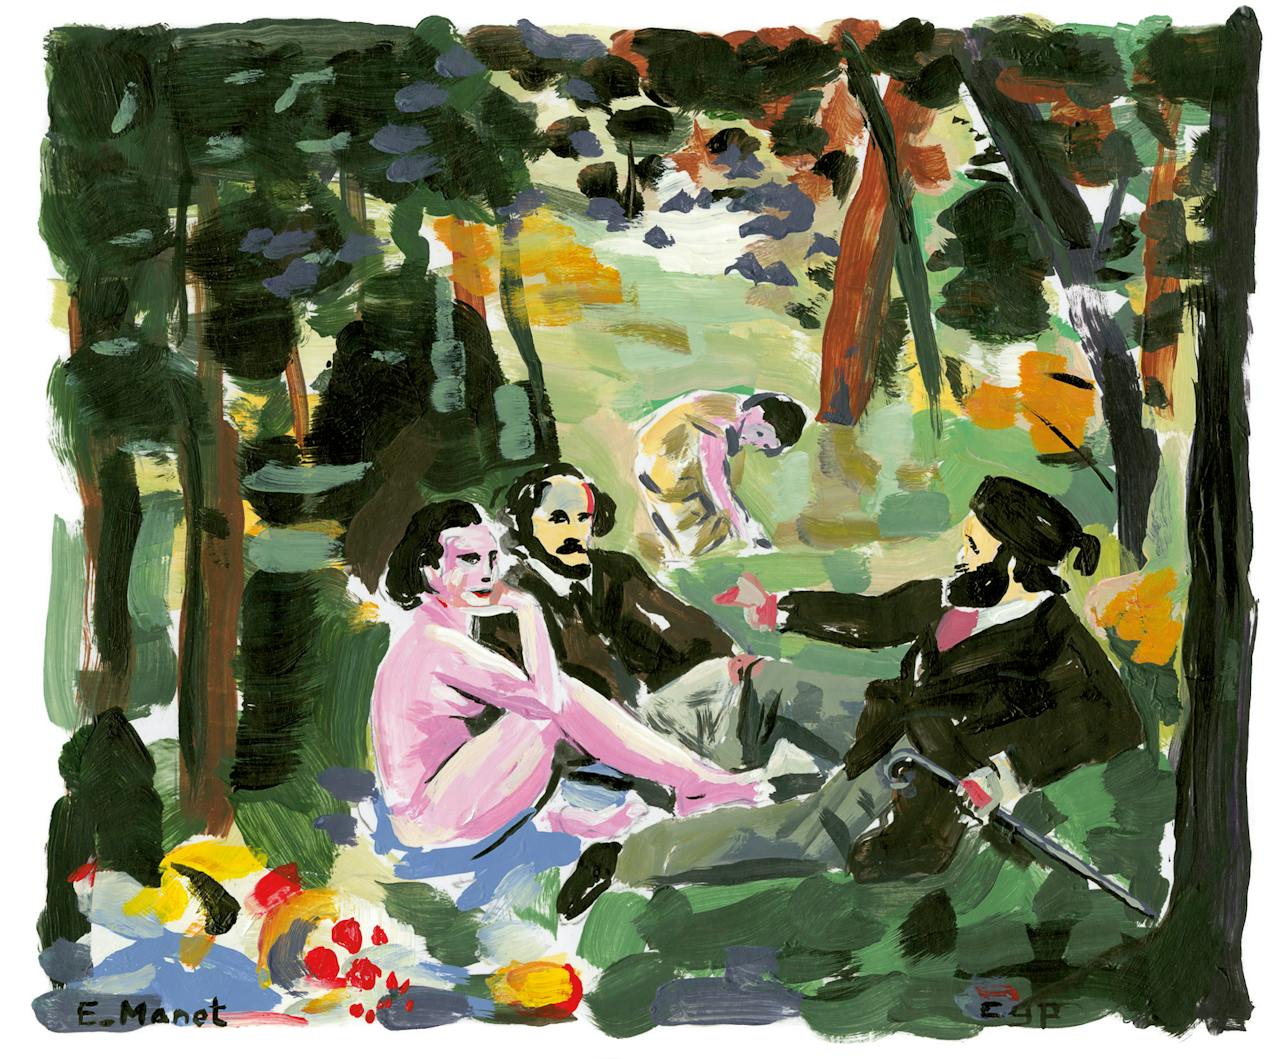 Interpretatie van Le déjeuner sur l’herbe van Manet. Volgens humanisticus Reine Rek geeft het gemoedsrust als we kunnen genieten van het alledaagse.